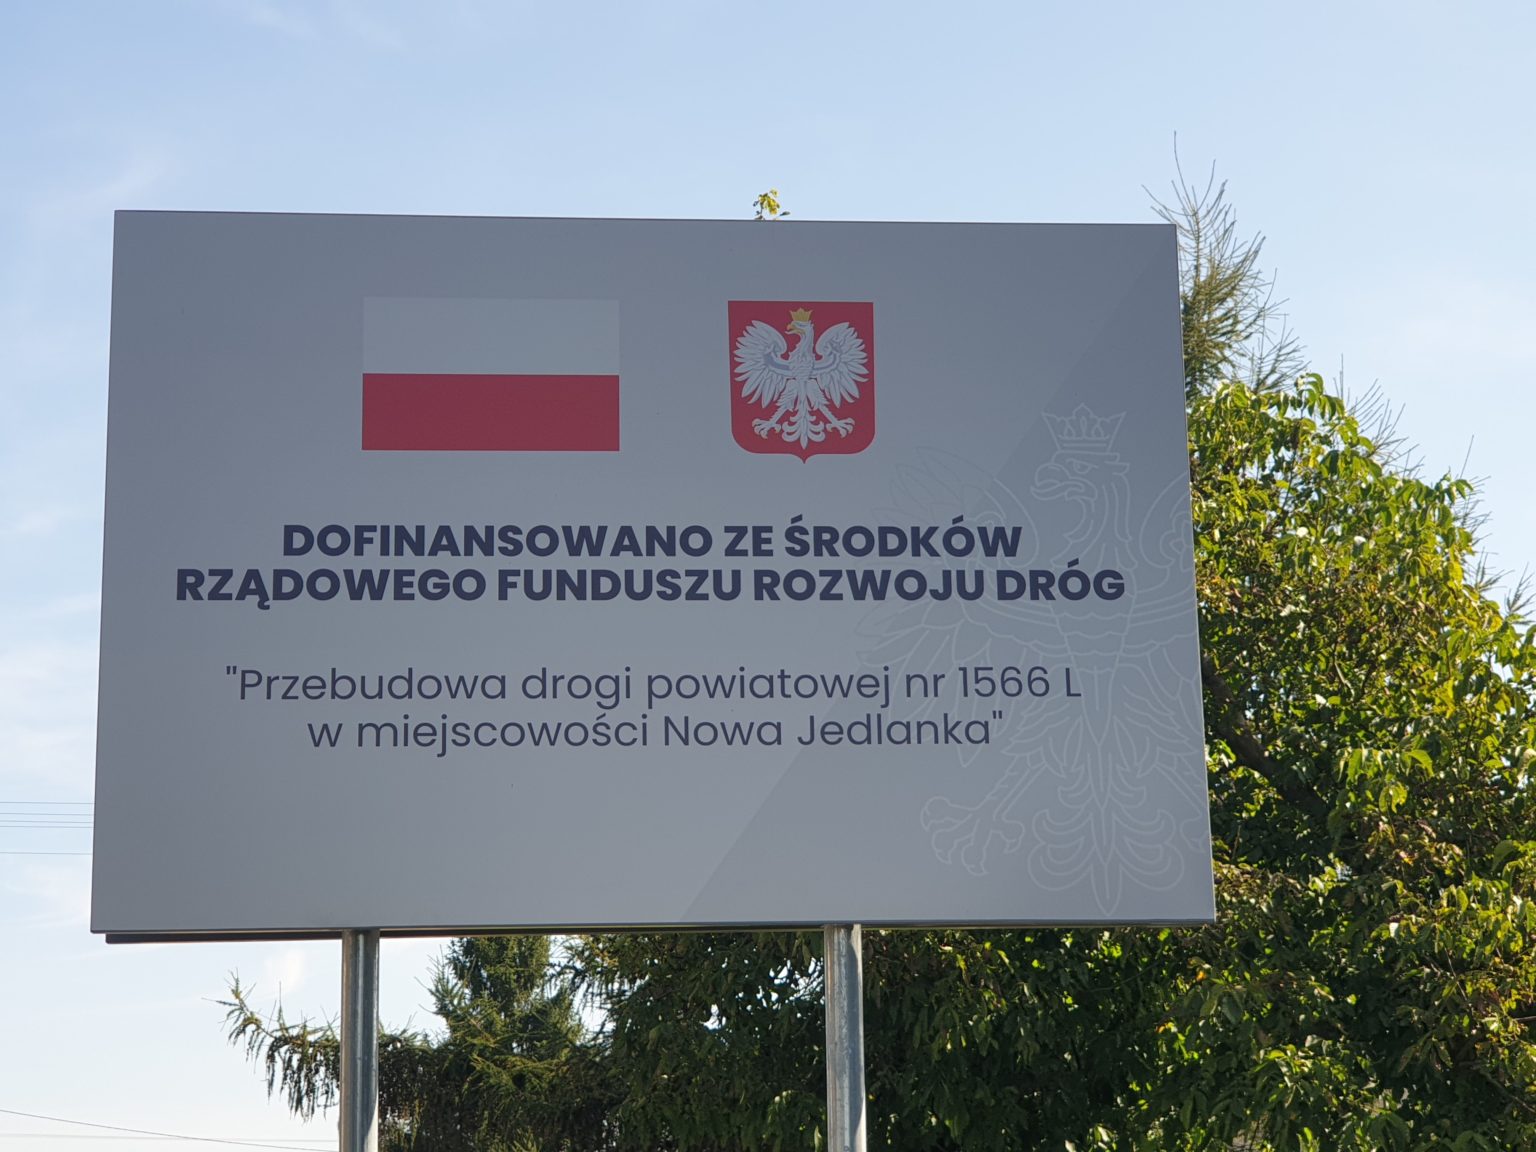 Przebudowa drogi powiatowej nr 1566 L w miejscowości Nowa Jedlanka.